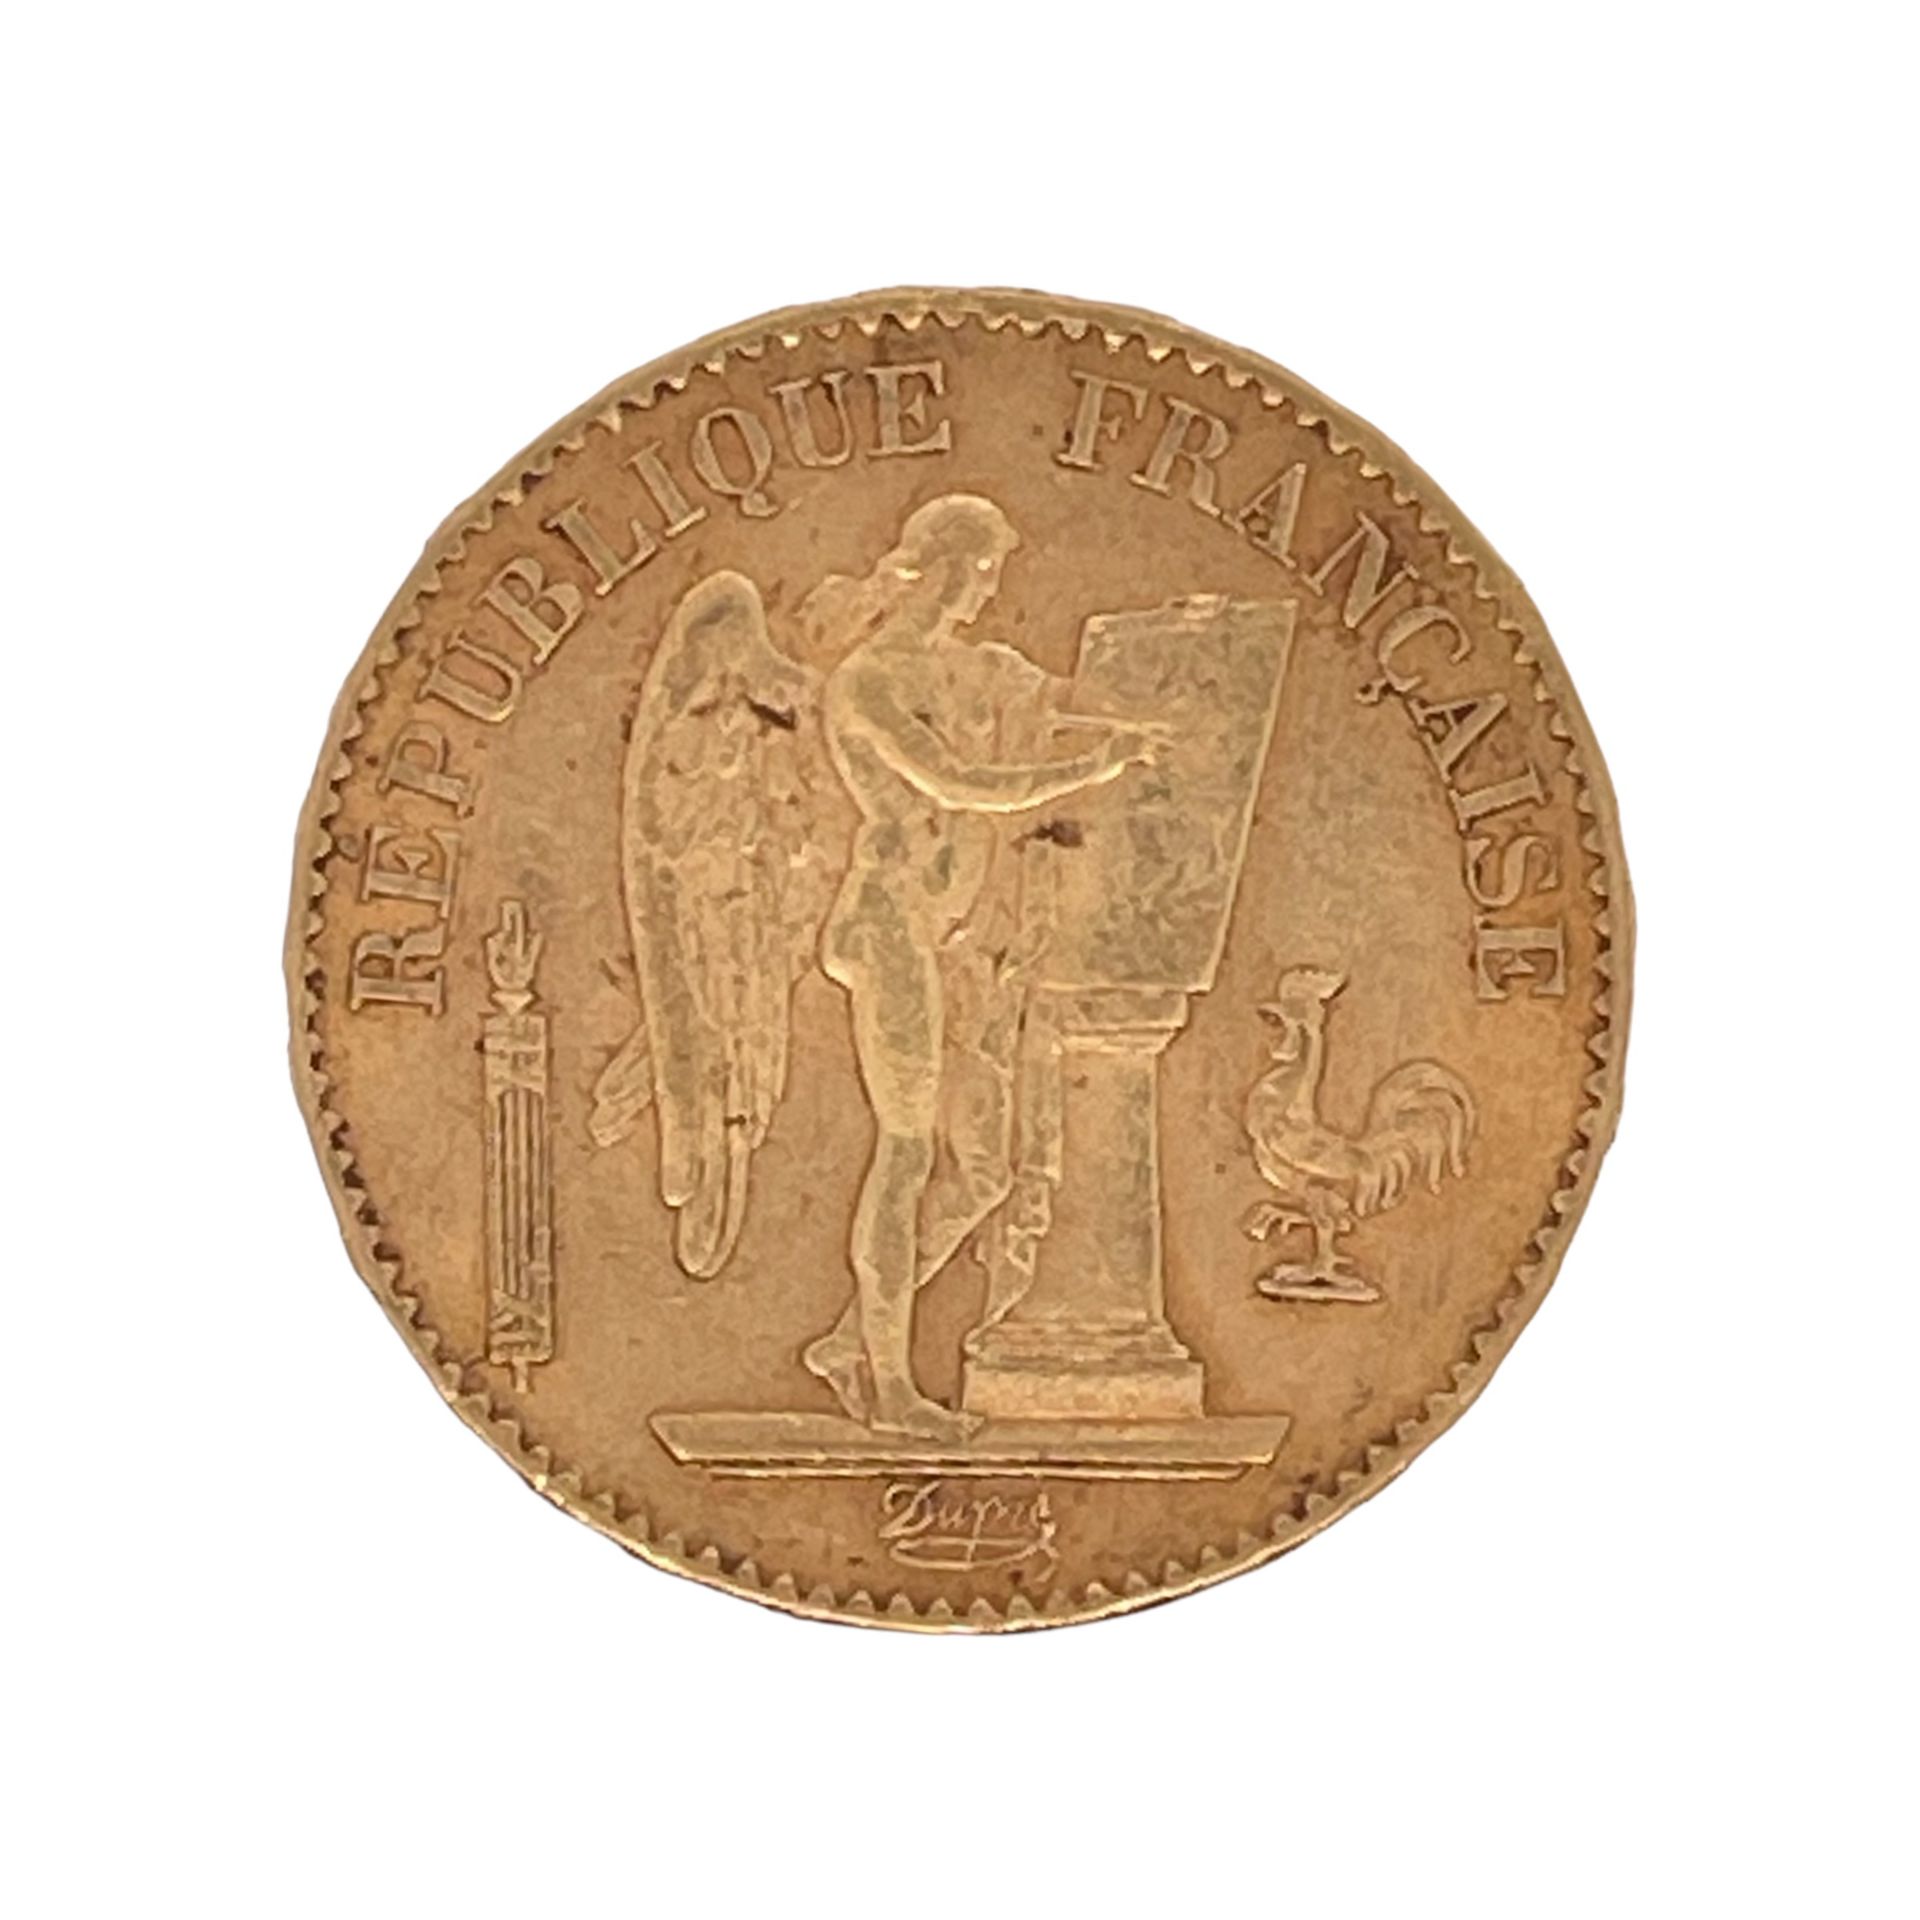 Goldmünze 20 Francs Republique Francaise 6,42g 900/- Gelbgold 1877 - Image 2 of 2